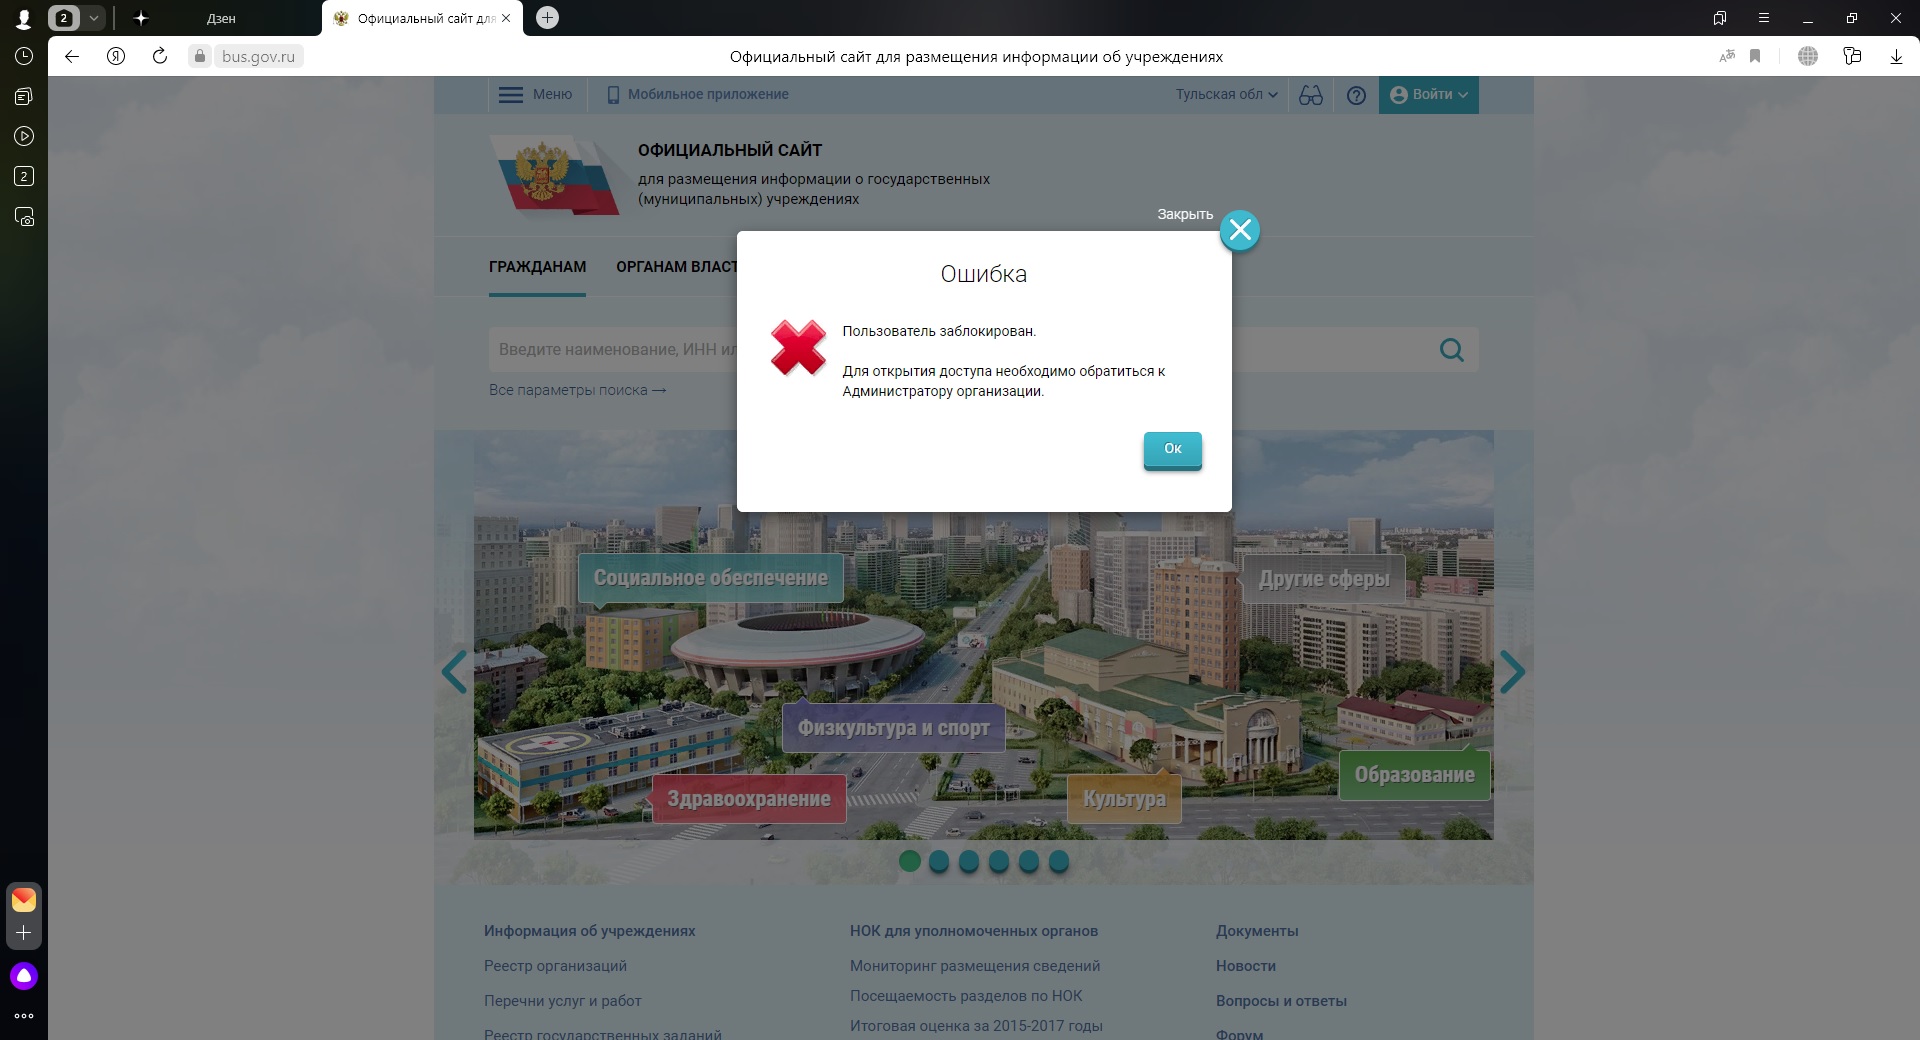 Riso sev gov ru регистрация. Bus gov пользователь заблокирован обратитесь к администратору. Проверки гов ру. Бас гов не публикуется. Росреестр гов ру.